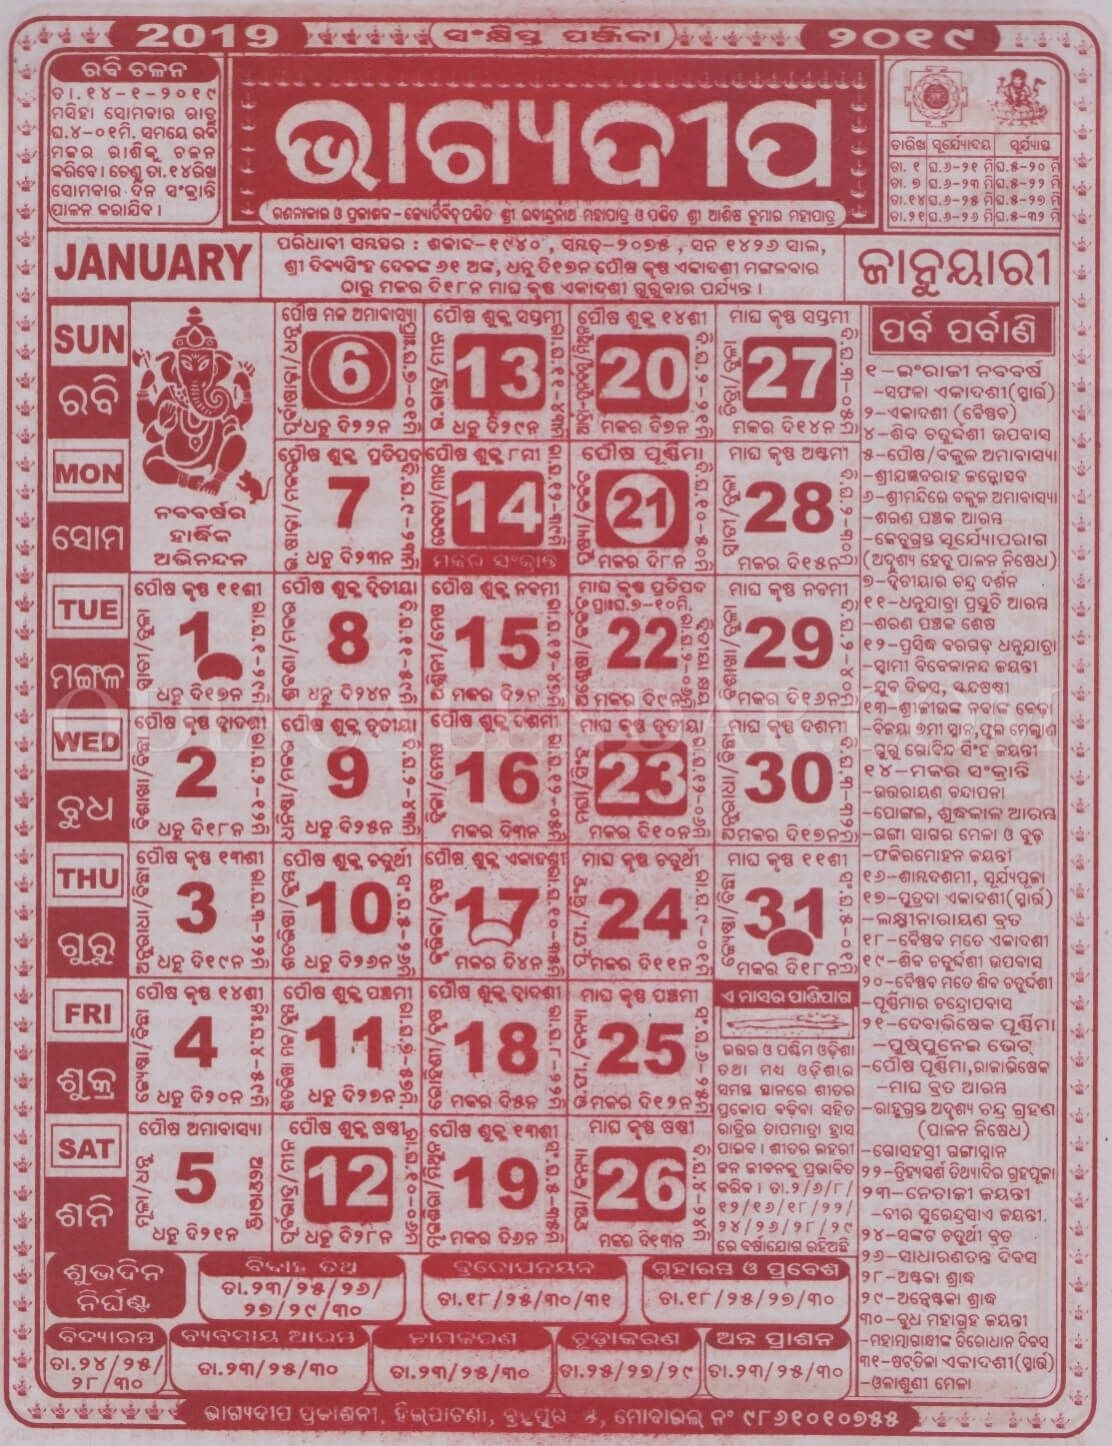 Bhagyadipa Odia Calendar 2020 | Calendar For Planning Bhagya Deepa Odiya Calendar August 2021